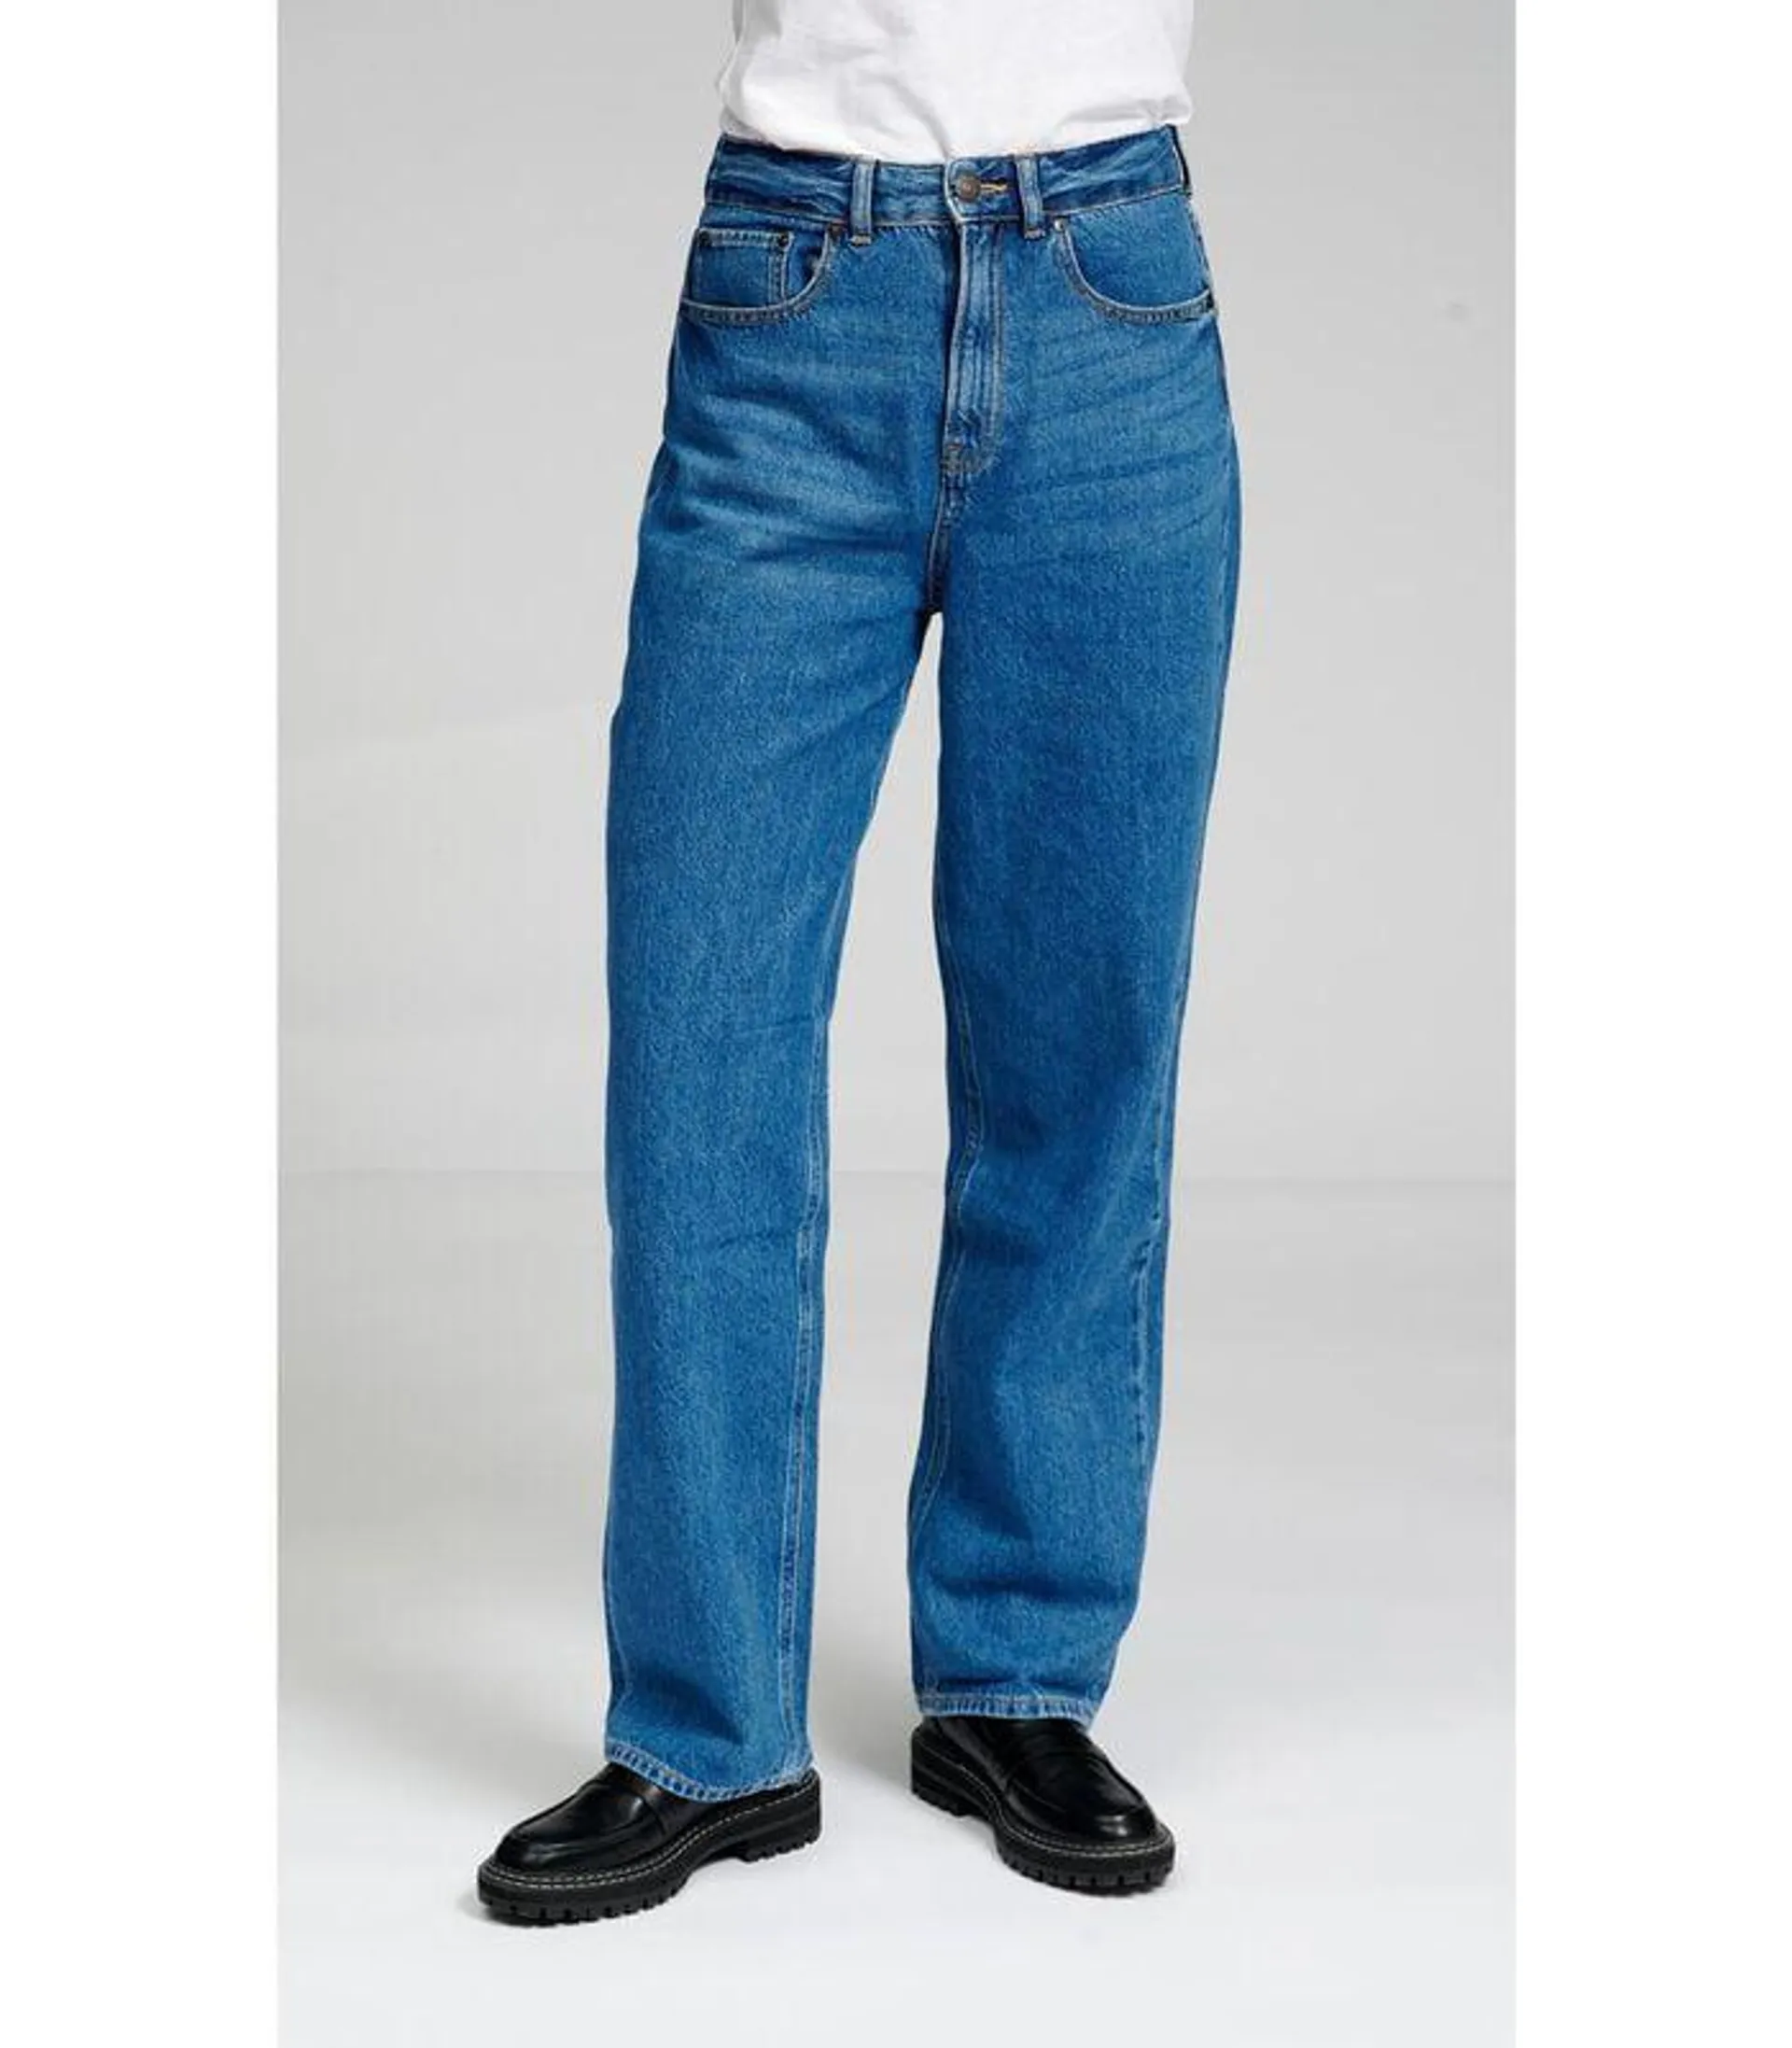 De Originele Performance Losse Jeans - Medium Blauwe Denim